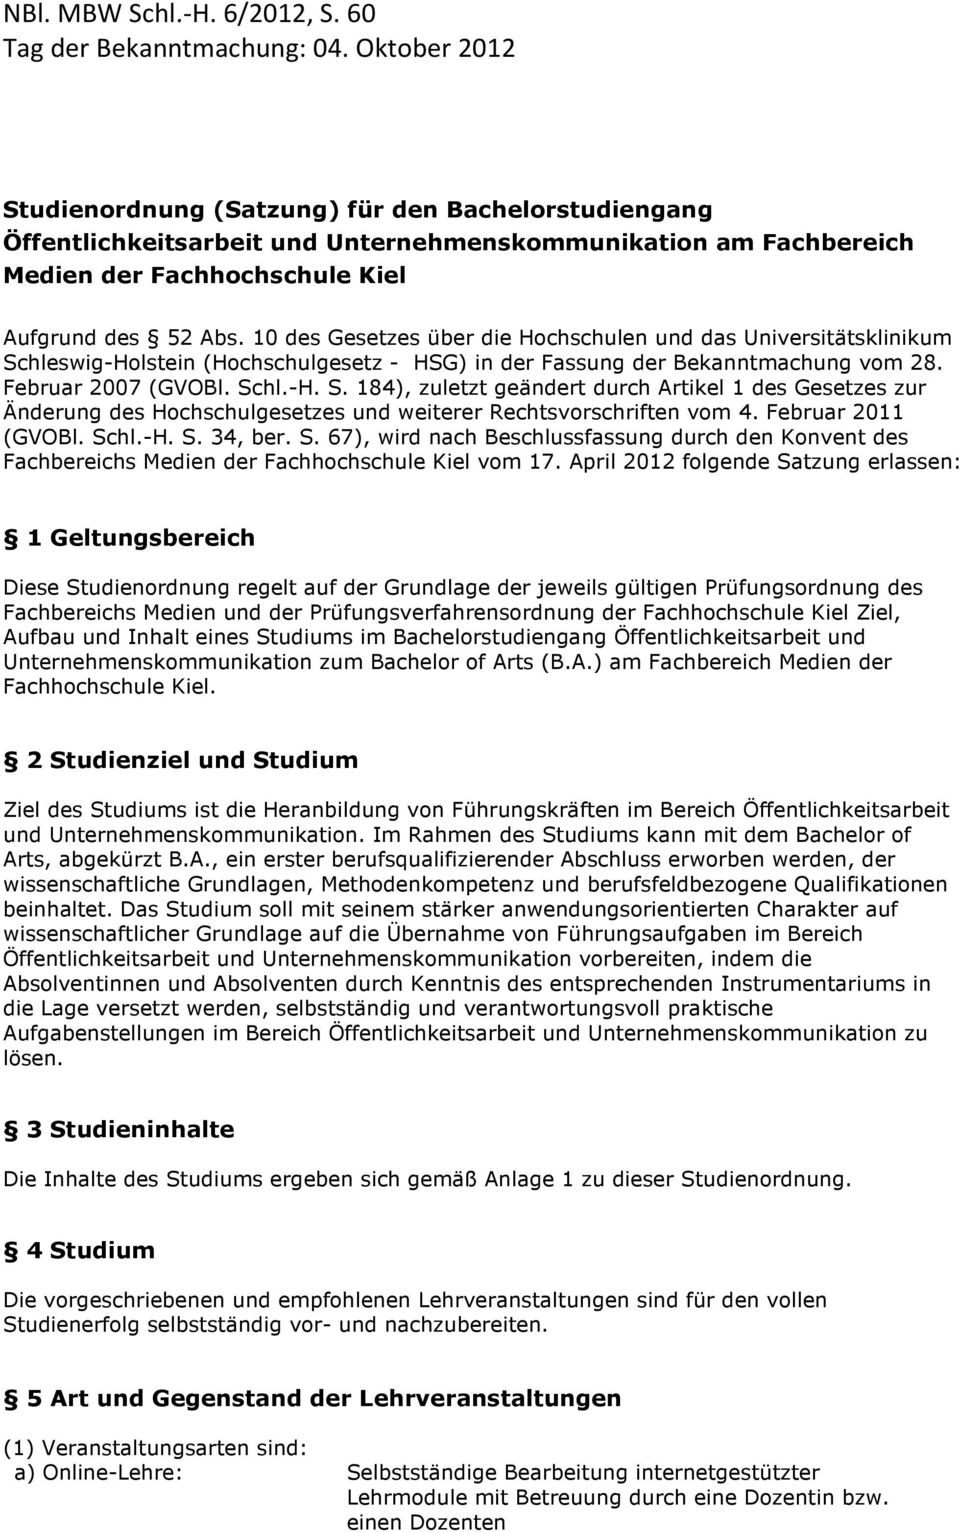 10 des Gesetzes über die Hochschulen und das Universitätsklinikum Schleswig-Holstein (Hochschulgesetz - HSG) in der Fassung der Bekanntmachung vom 28. Februar 2007 (GVOBl. Schl.-H. S. 184), zuletzt geändert durch Artikel 1 des Gesetzes zur Änderung des Hochschulgesetzes und weiterer Rechtsvorschriften vom 4.